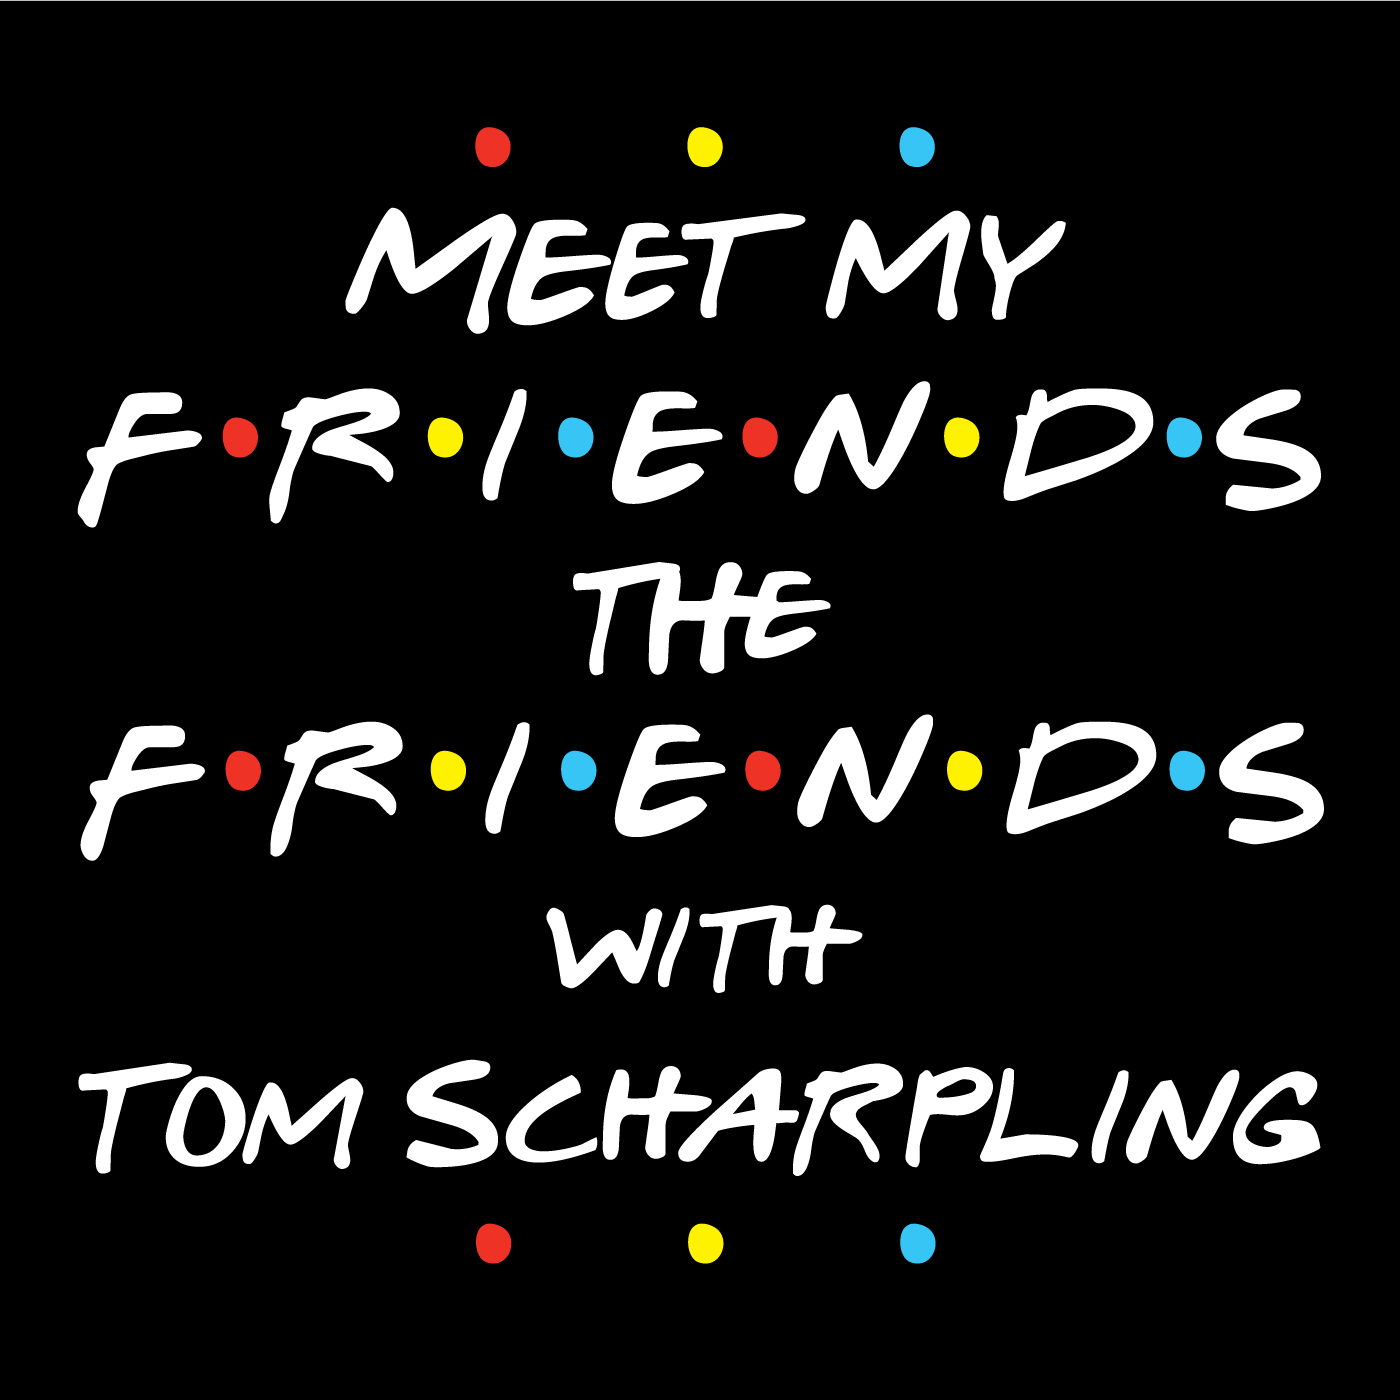 Meet My Friends The Friends with Tom Scharpling